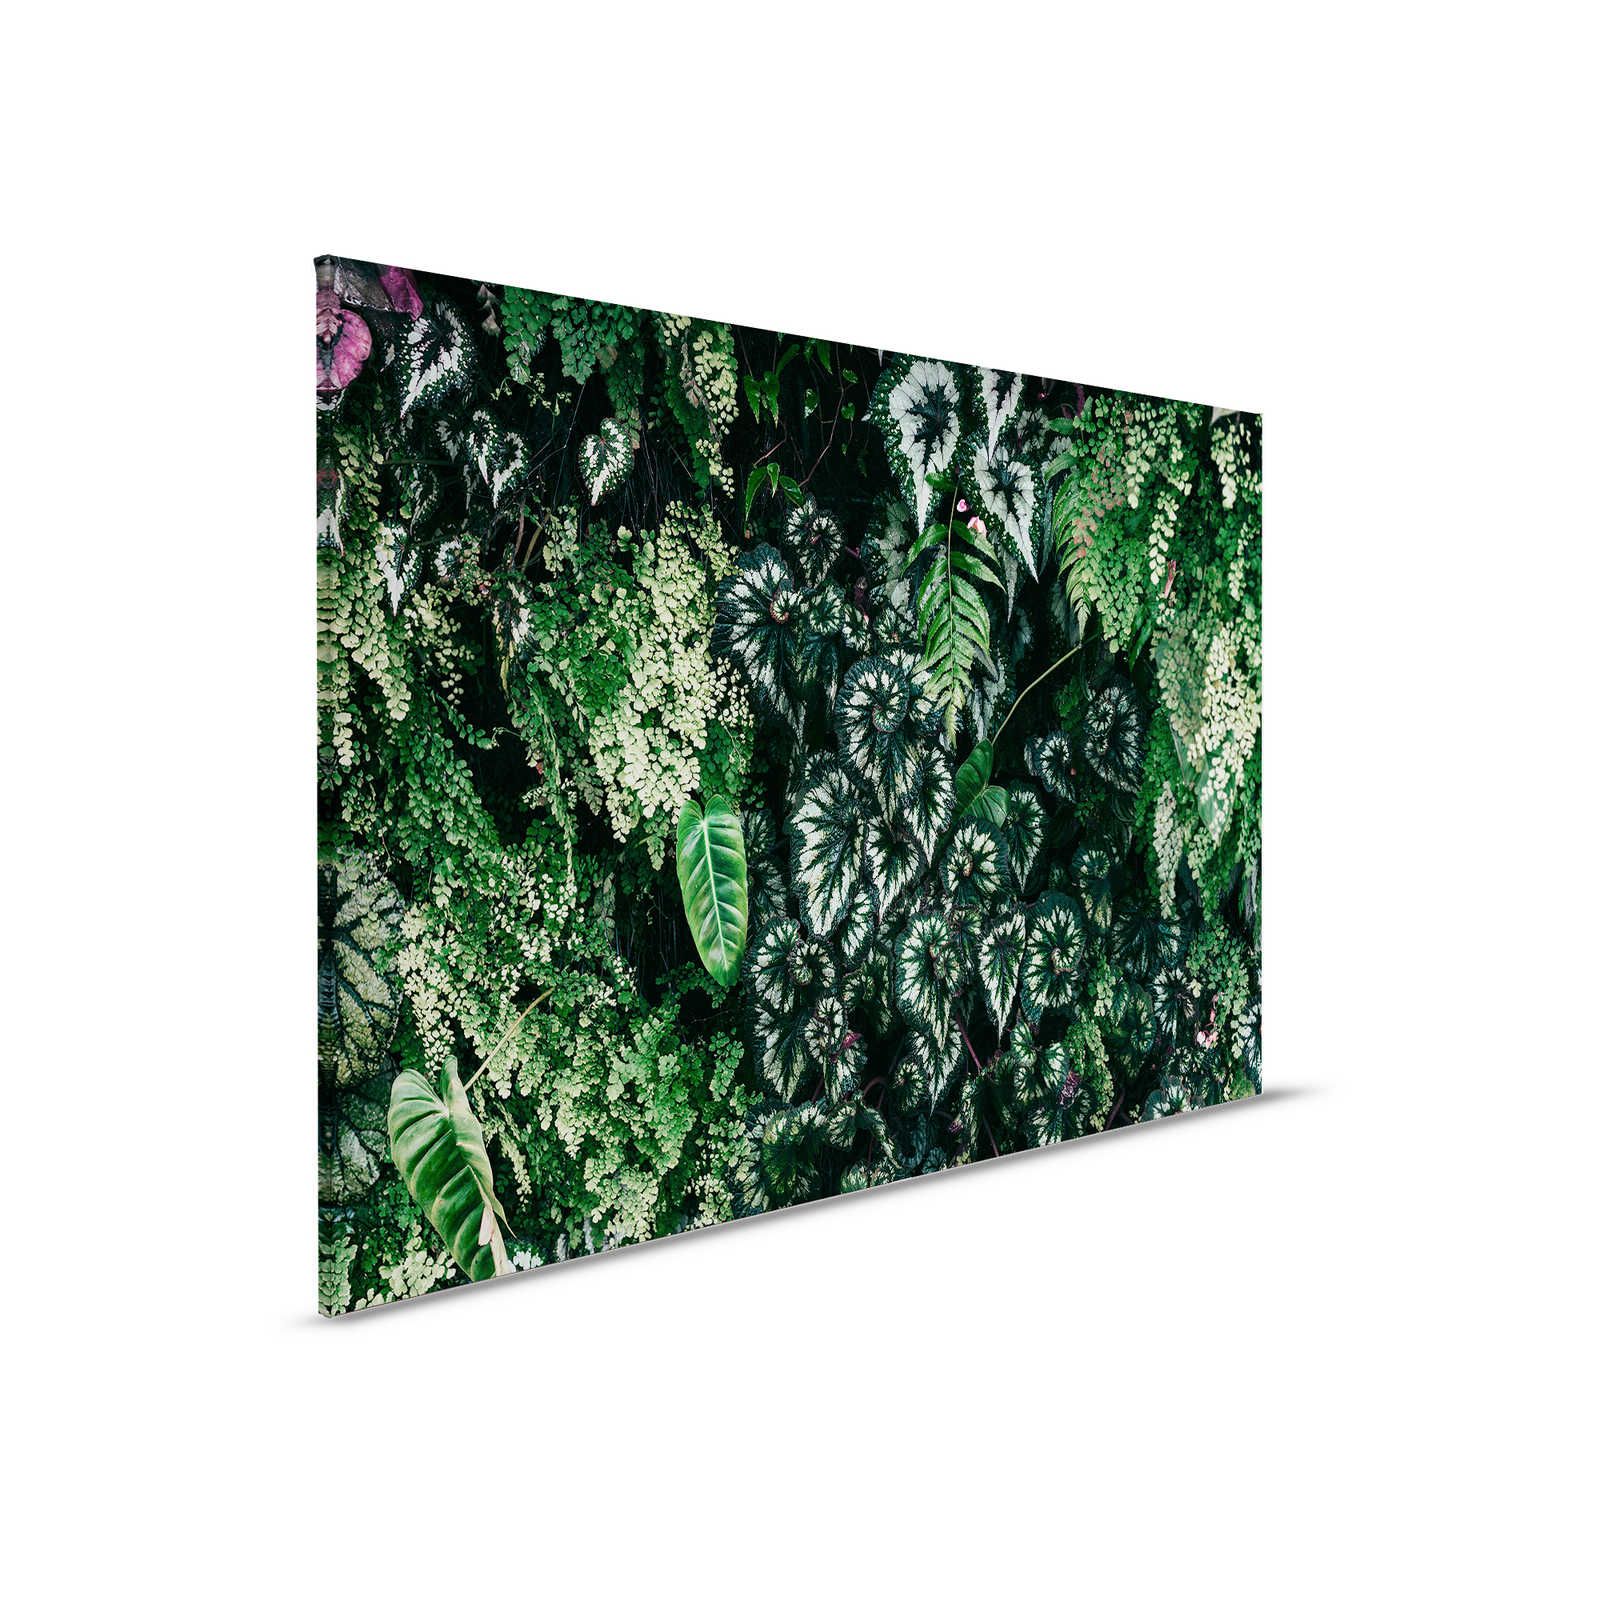 Deep Green 2 - Toile Fourrés de feuilles, fougères & plantes suspendues - 0,90 m x 0,60 m
